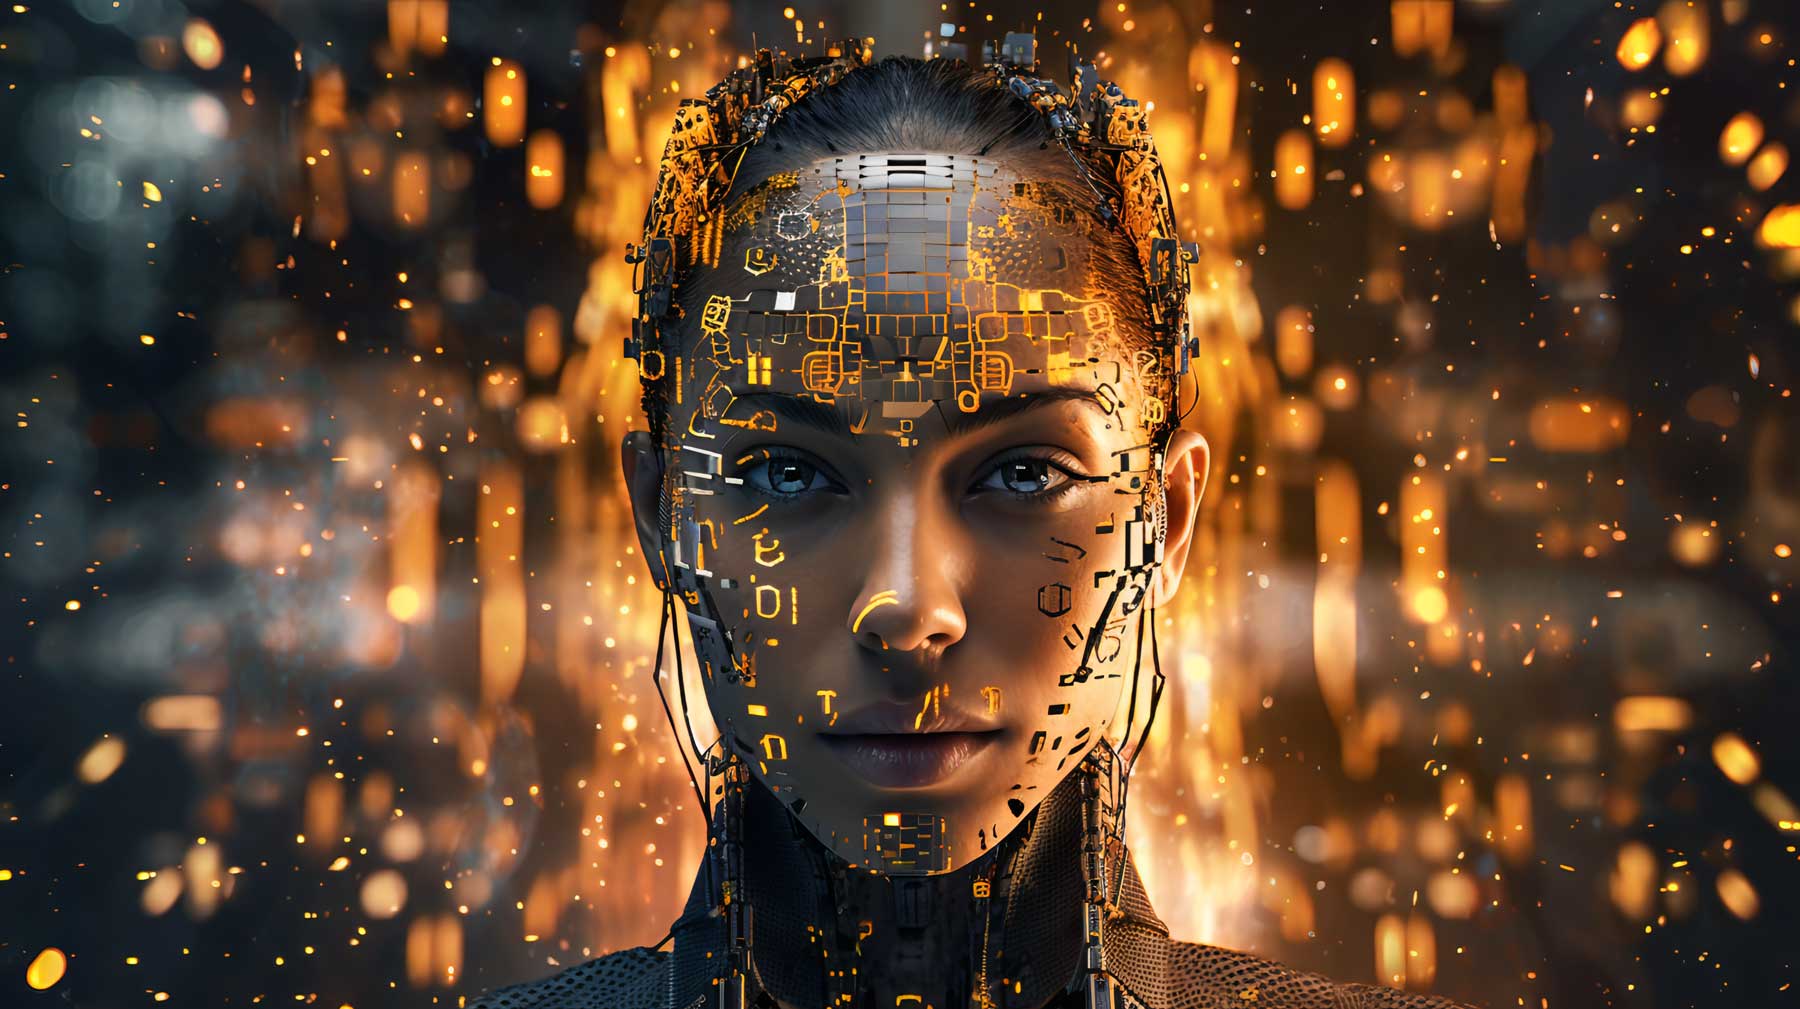 这是一张描绘半人脸半机器人的图像，展示了高科技与人类特征的结合，背景充满了金色光点，营造出未来科技感。